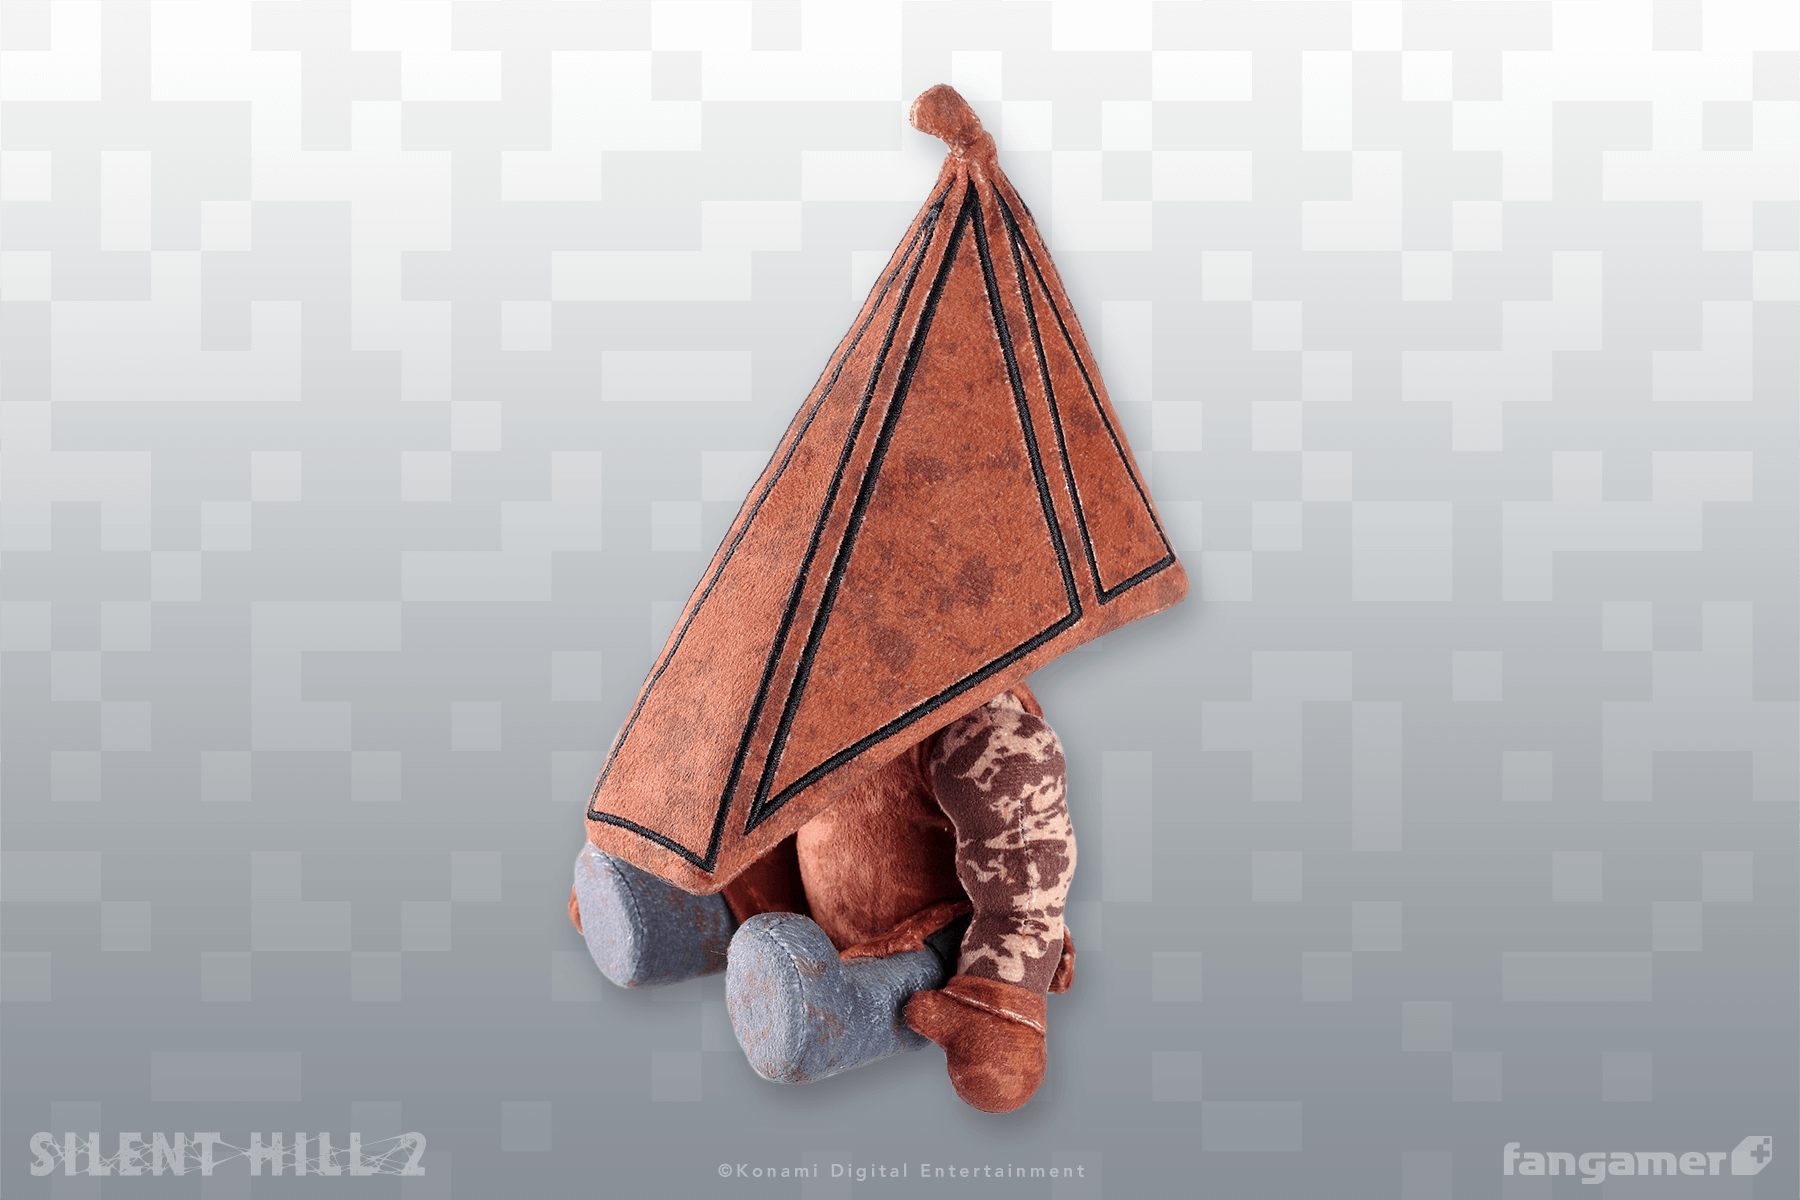 Silent Hill Plush Pyramid Head